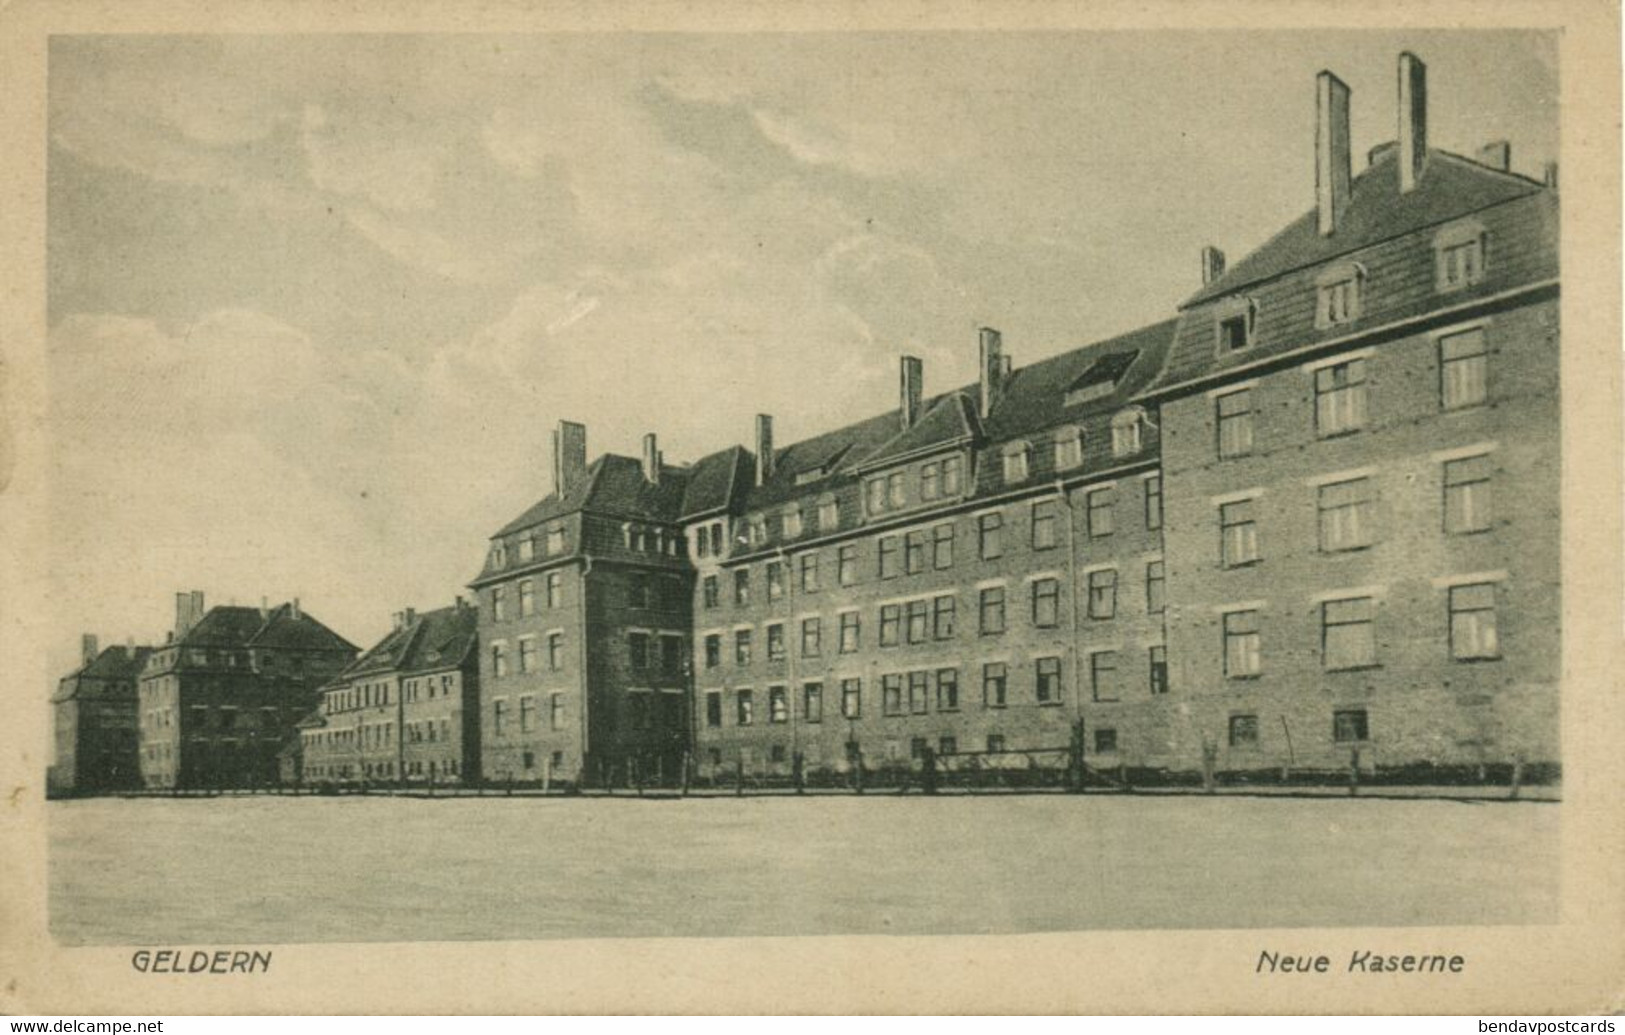 GELDERN, Neue Kaserne (1920s) AK - Geldern